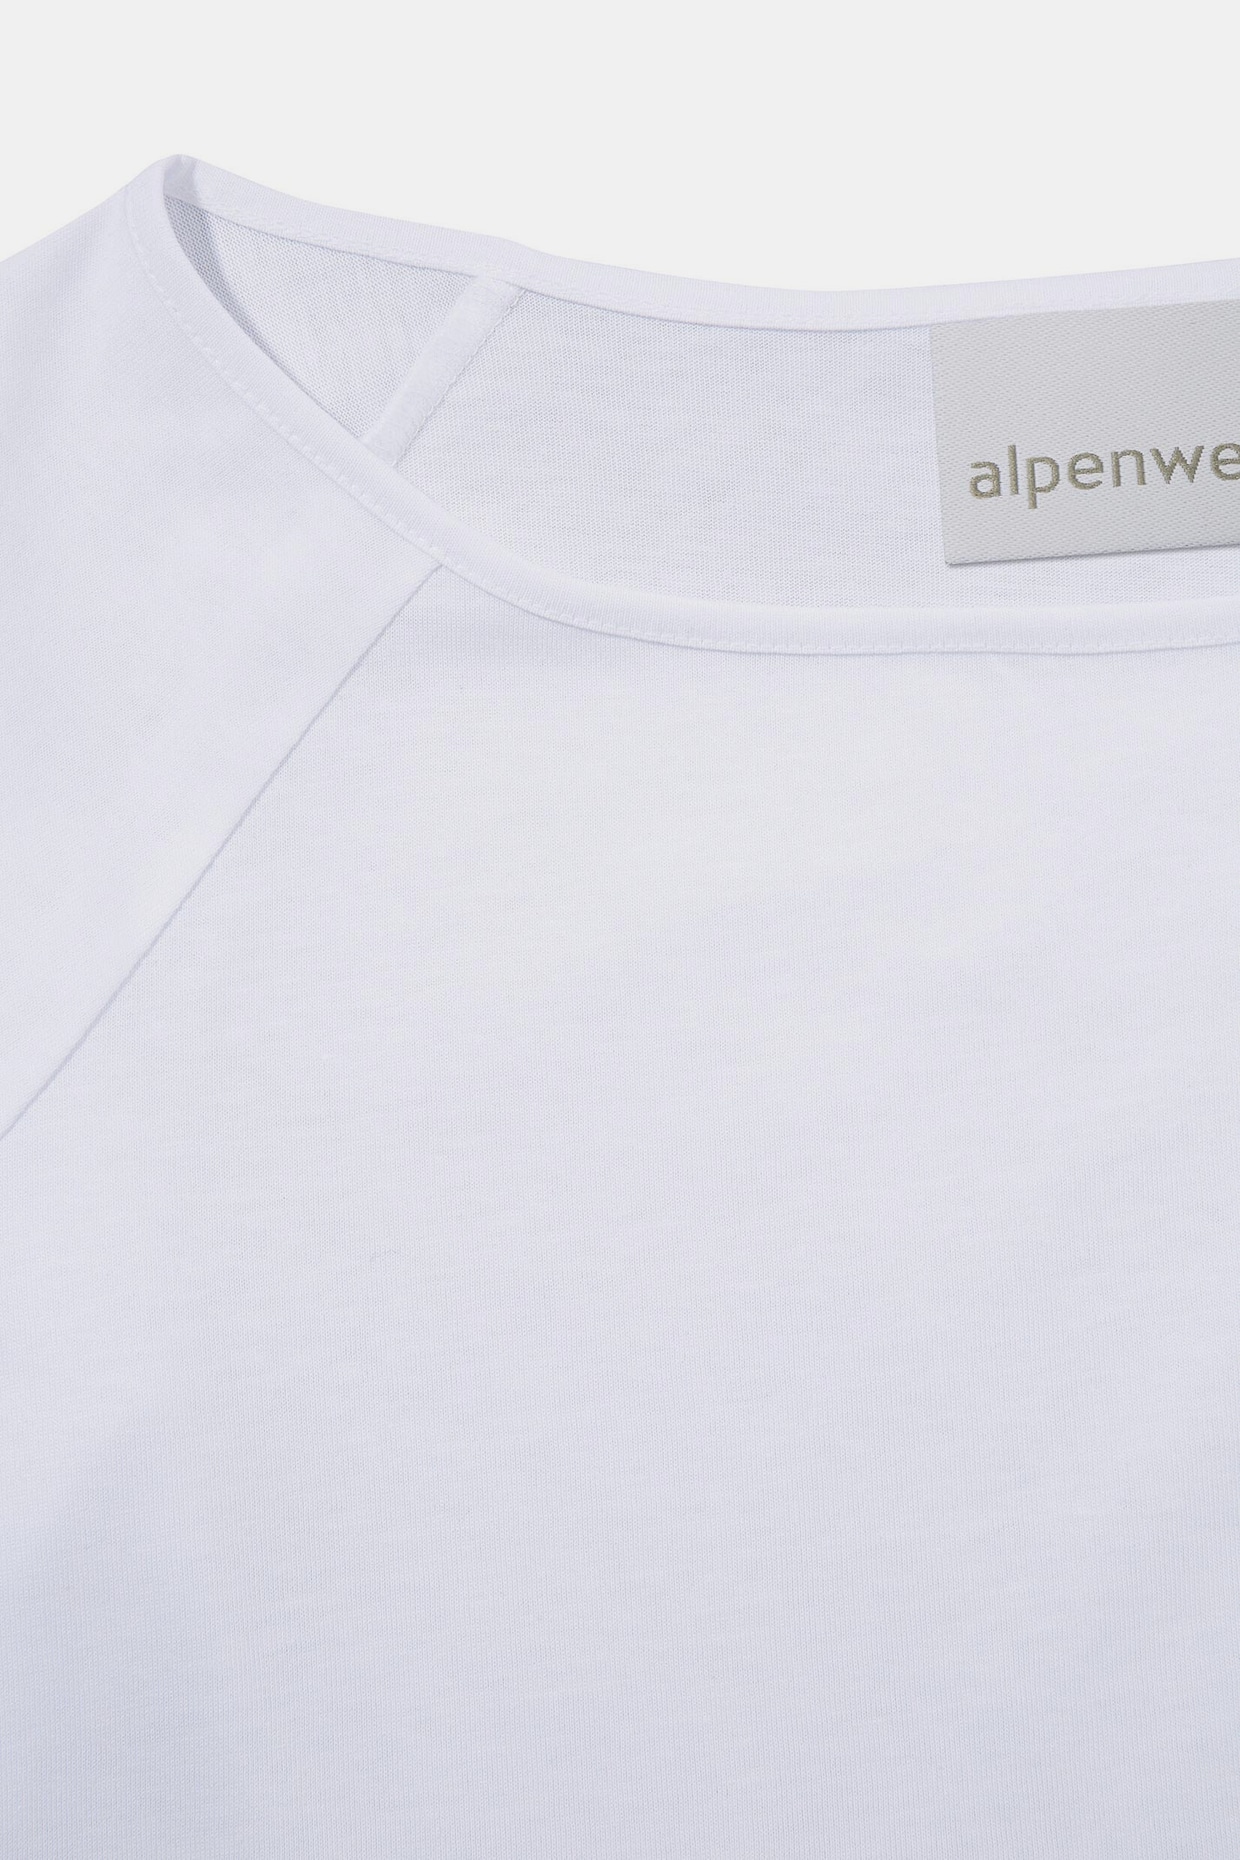 Alpenwelt Trachtenshirt - weiß